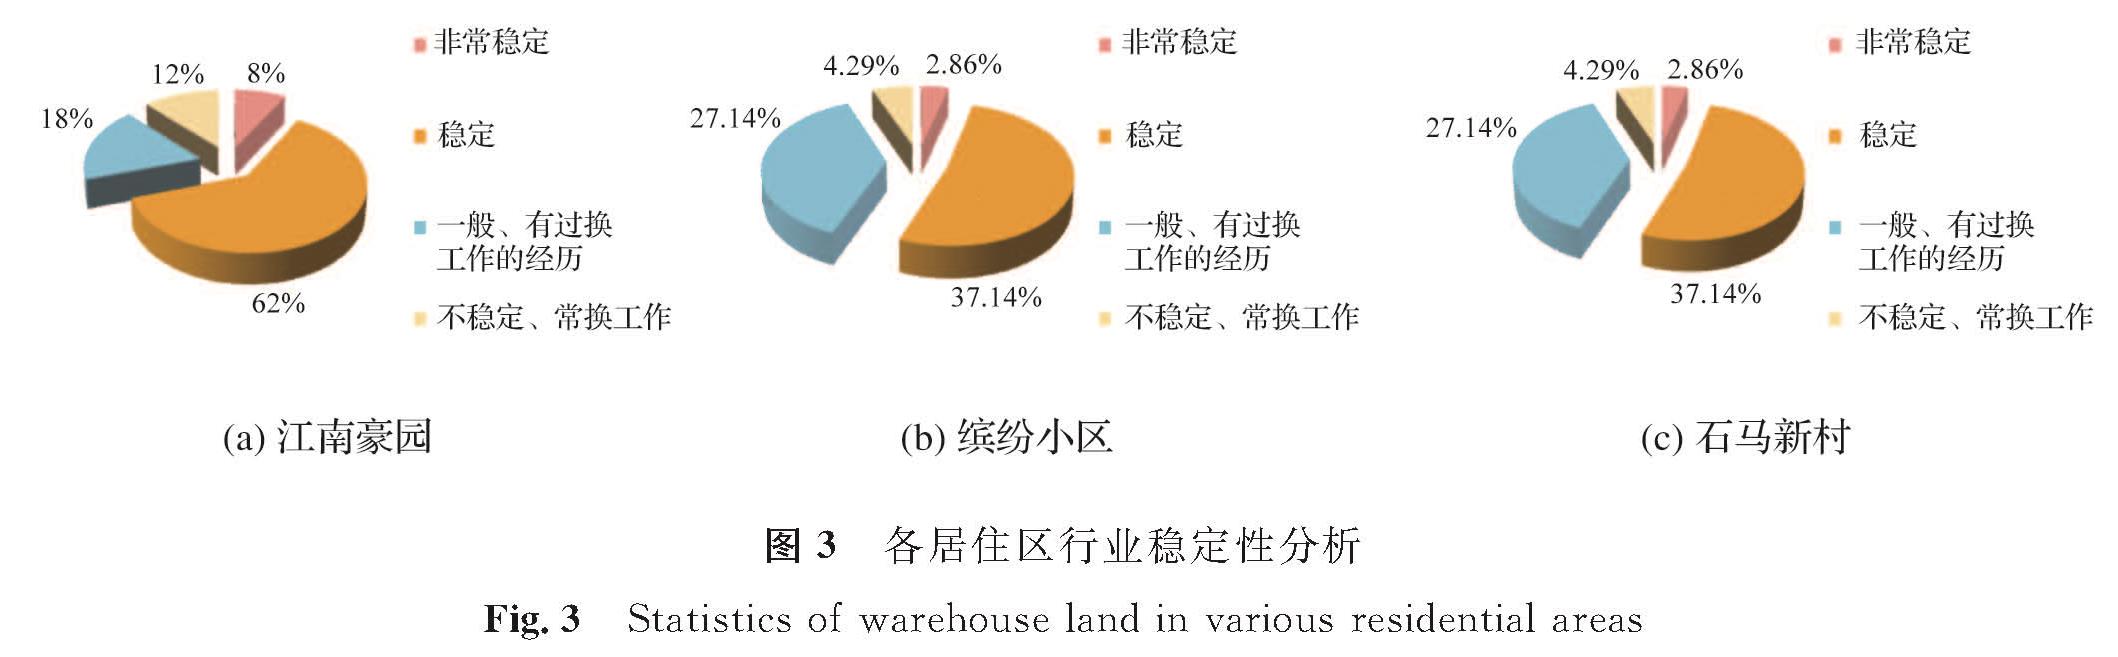 图3 各居住区行业稳定性分析<br/>Fig.3 Statistics of warehouse land in various residential areas